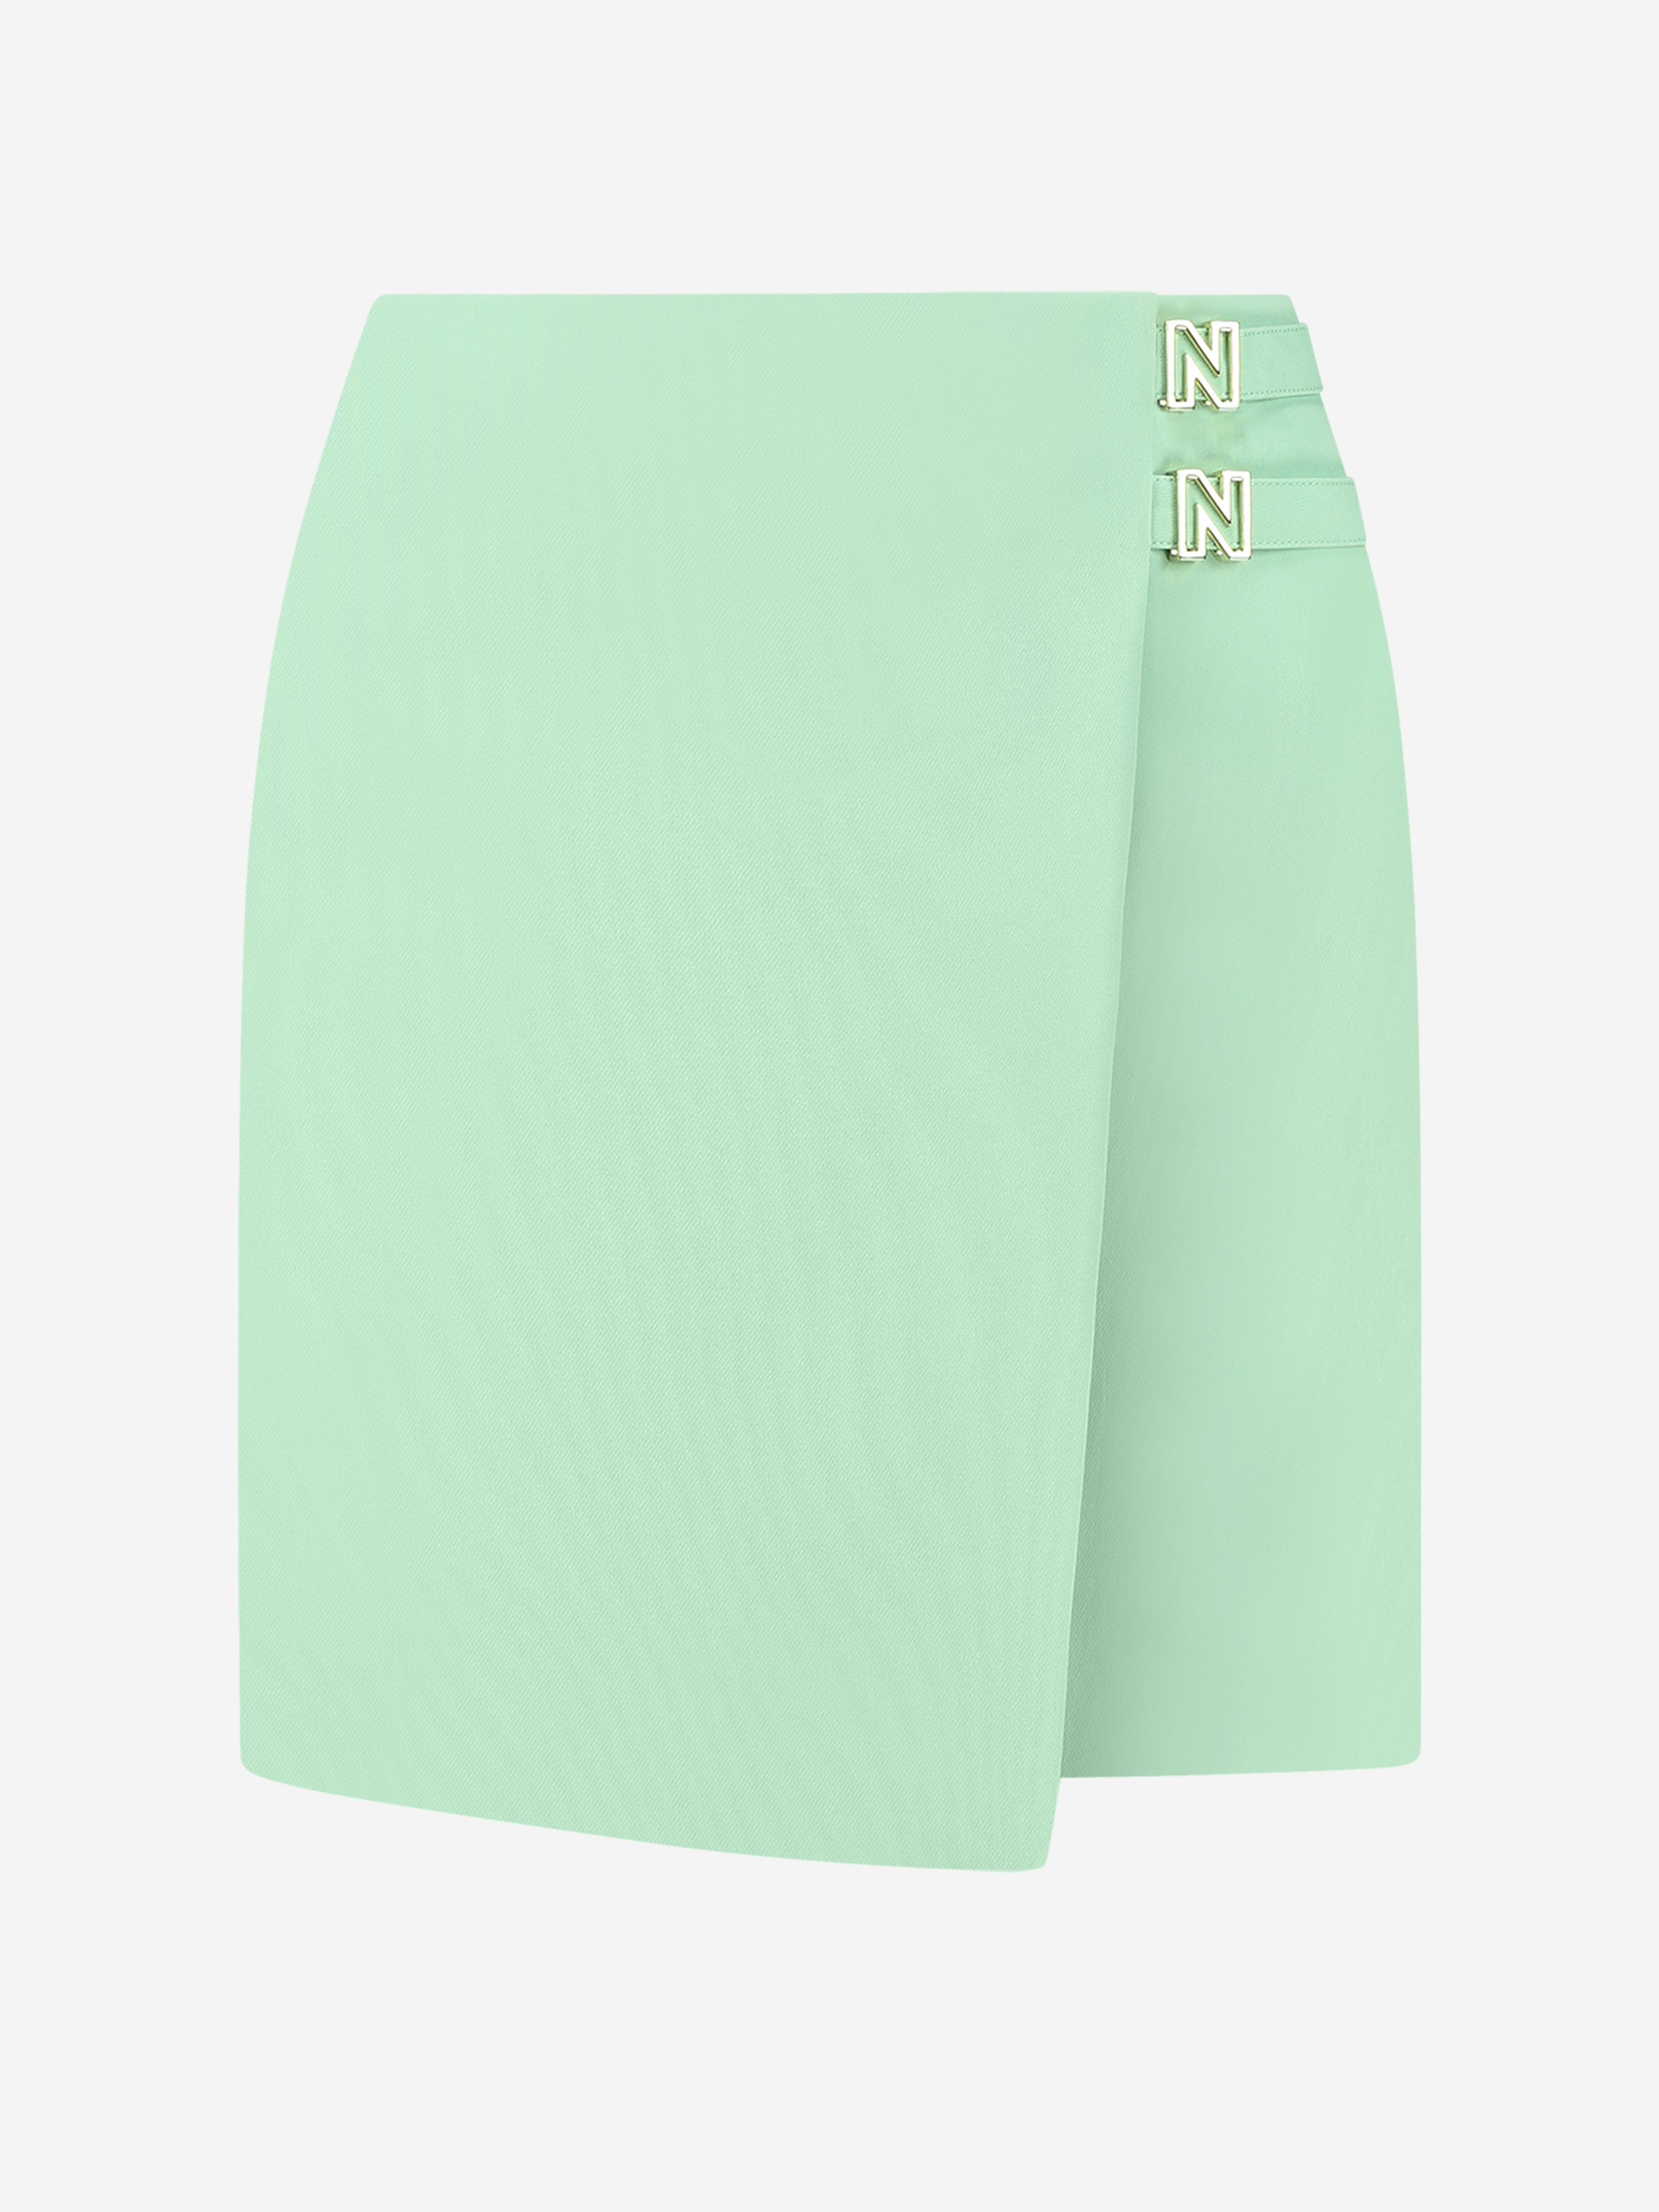 Mini skirt with N slides